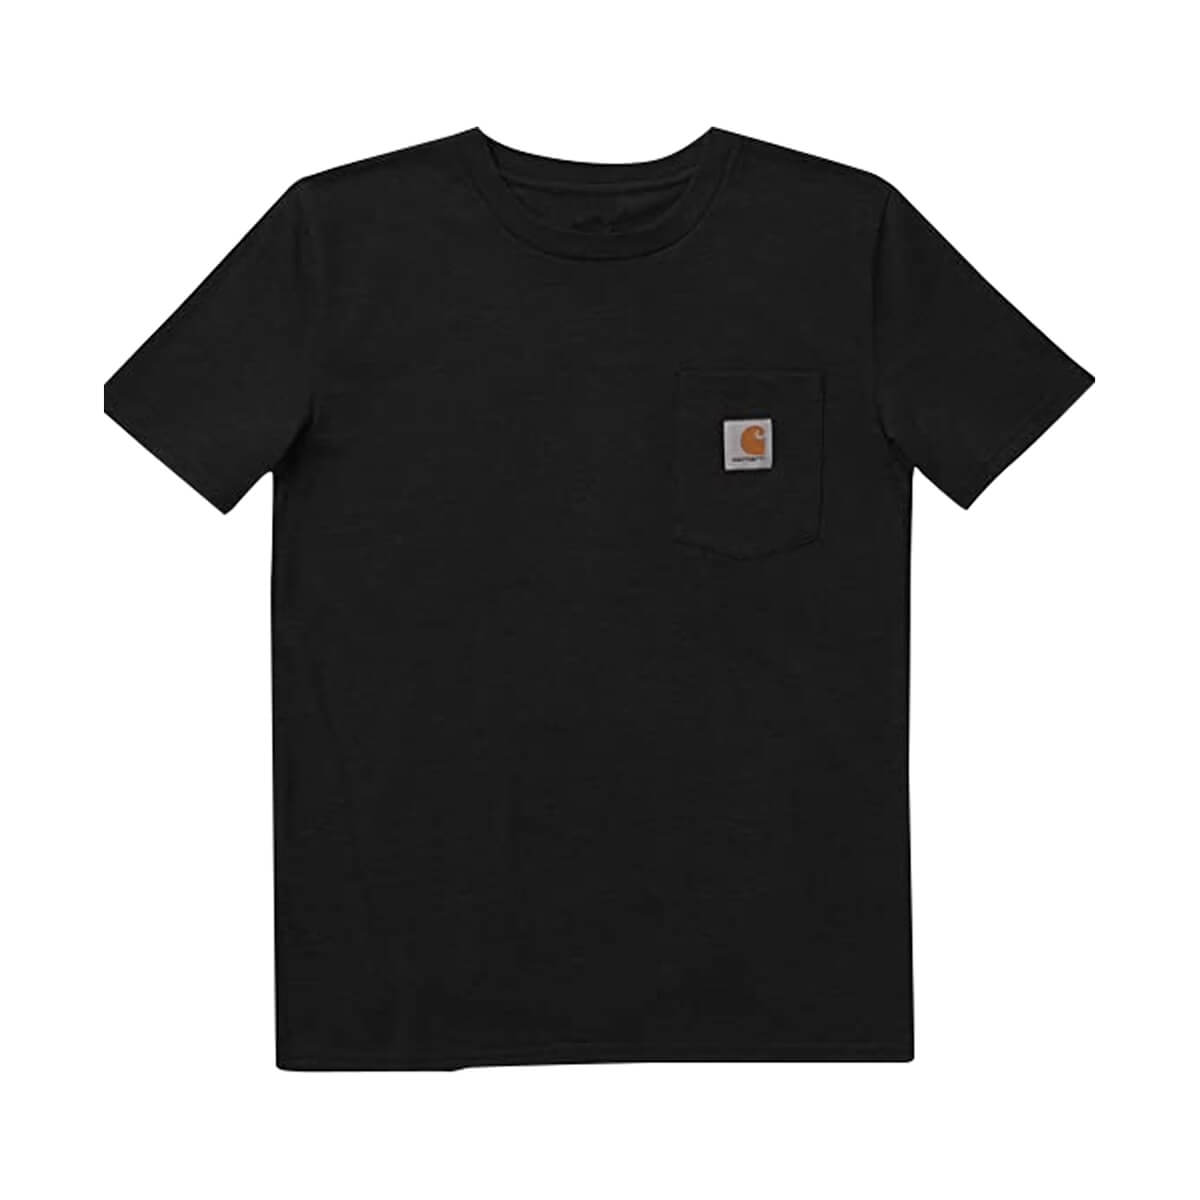 Carhartt Boys Short-Sleeve Pocket T-Shirt - Black